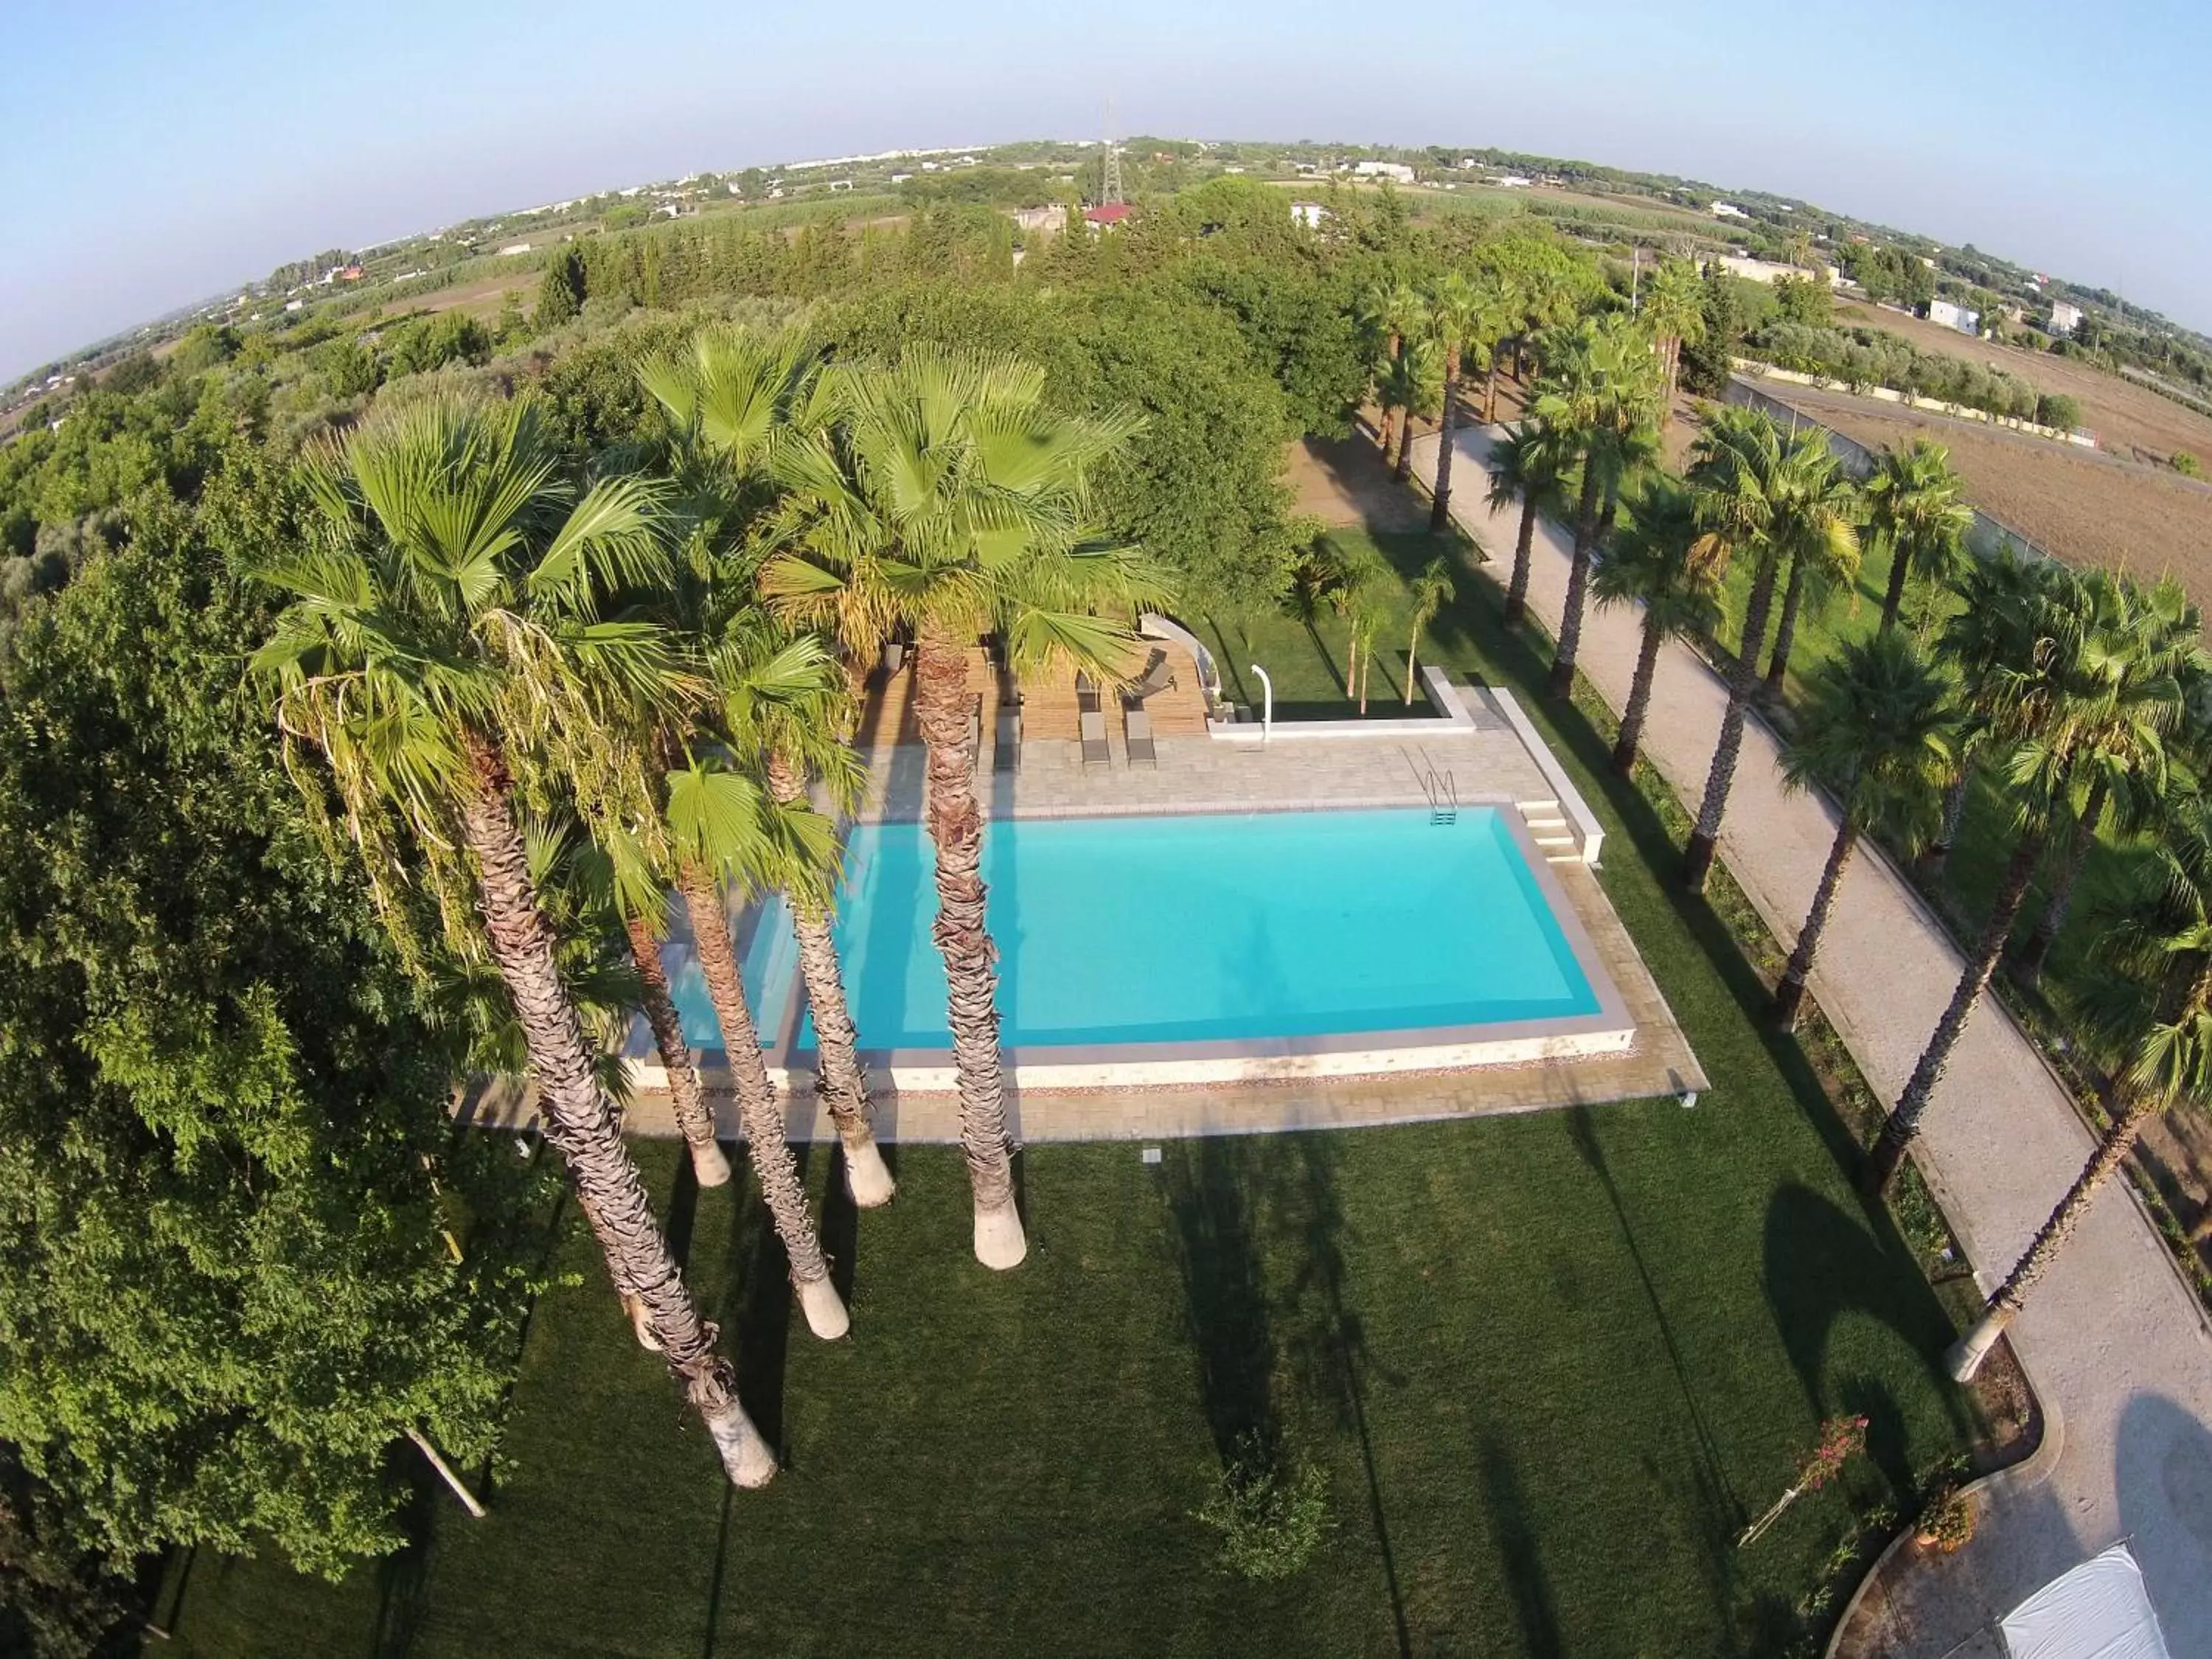 Property building, Pool View in Parco Degli Aranci